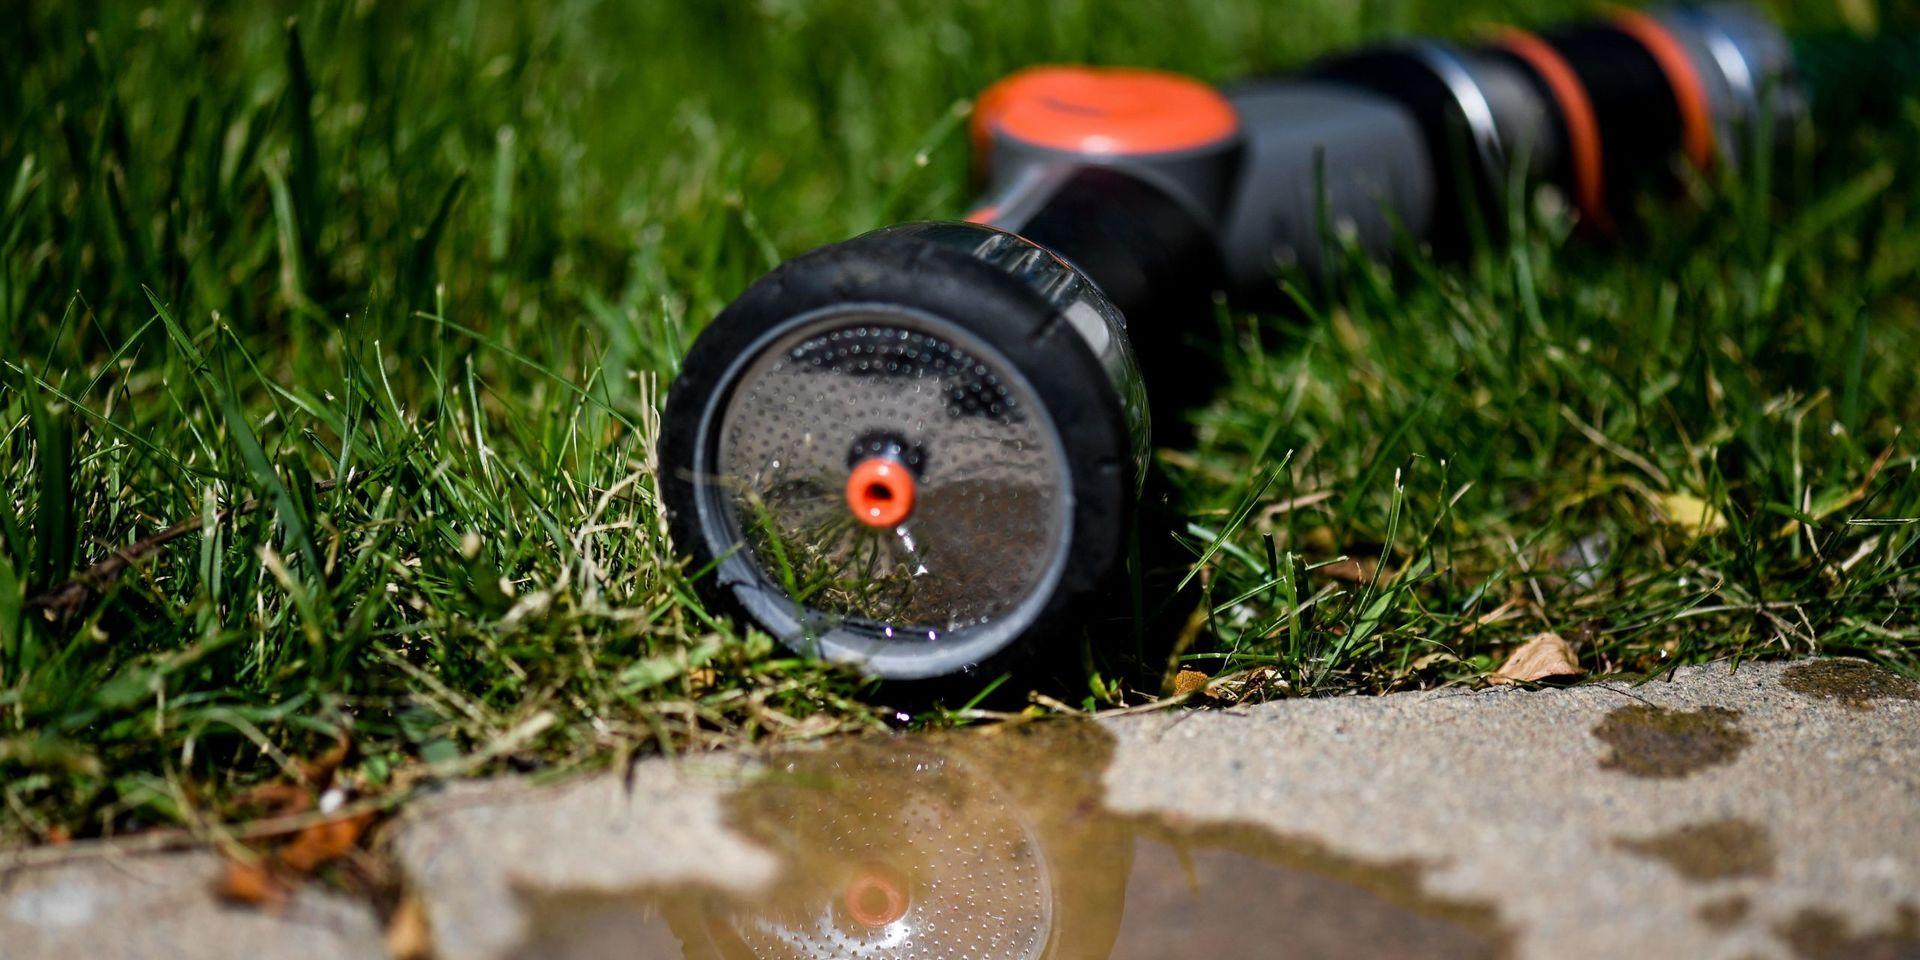 Undvik att vattna gräsmattan! Det meddelar förvaltningen Krettslopp och vatten efter värmeböljan som gjort göteborgarna extra törstiga.